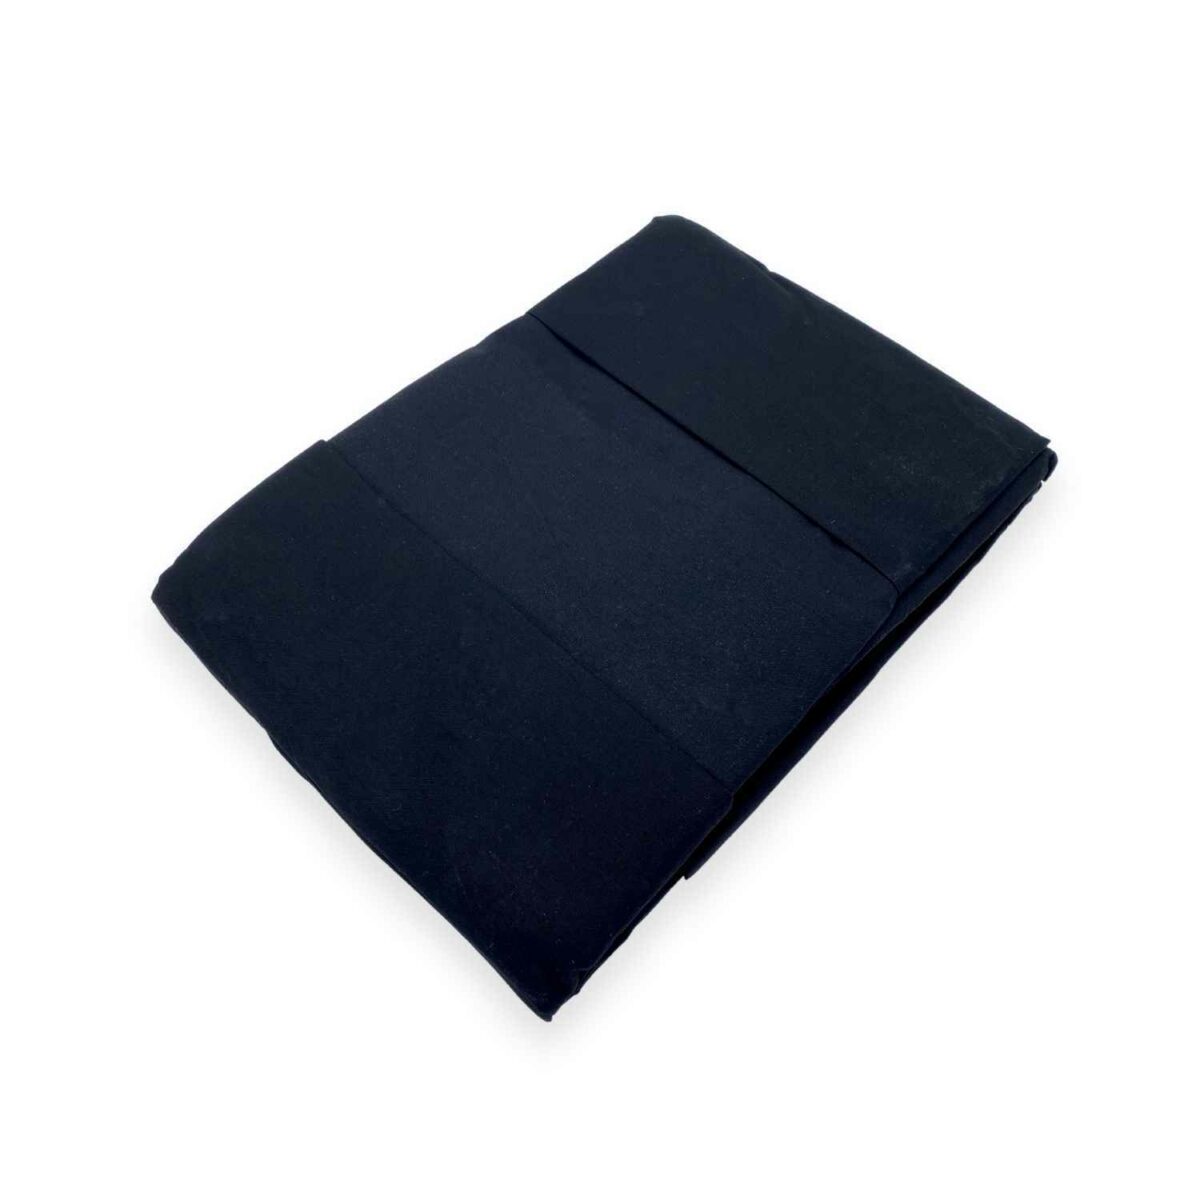 nero-coloratissimi-completo-lenzuola-puro-cotone-tinta-unita-fold